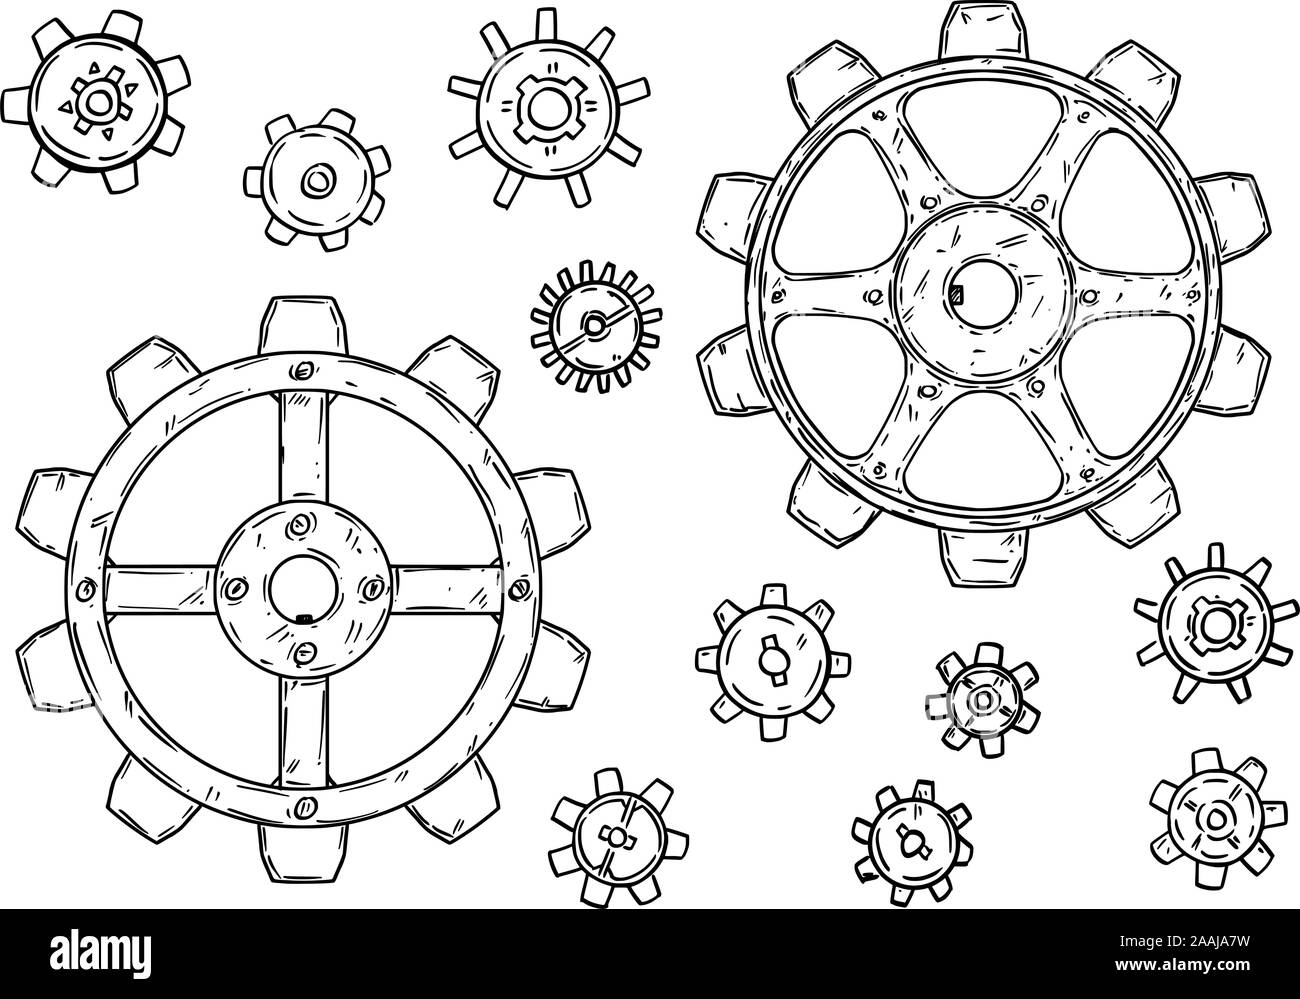 Il disegno vettoriale o illustrazione di una serie di ruote dentate o ingranaggi o ruote dentate in nero su sfondo bianco. Illustrazione Vettoriale